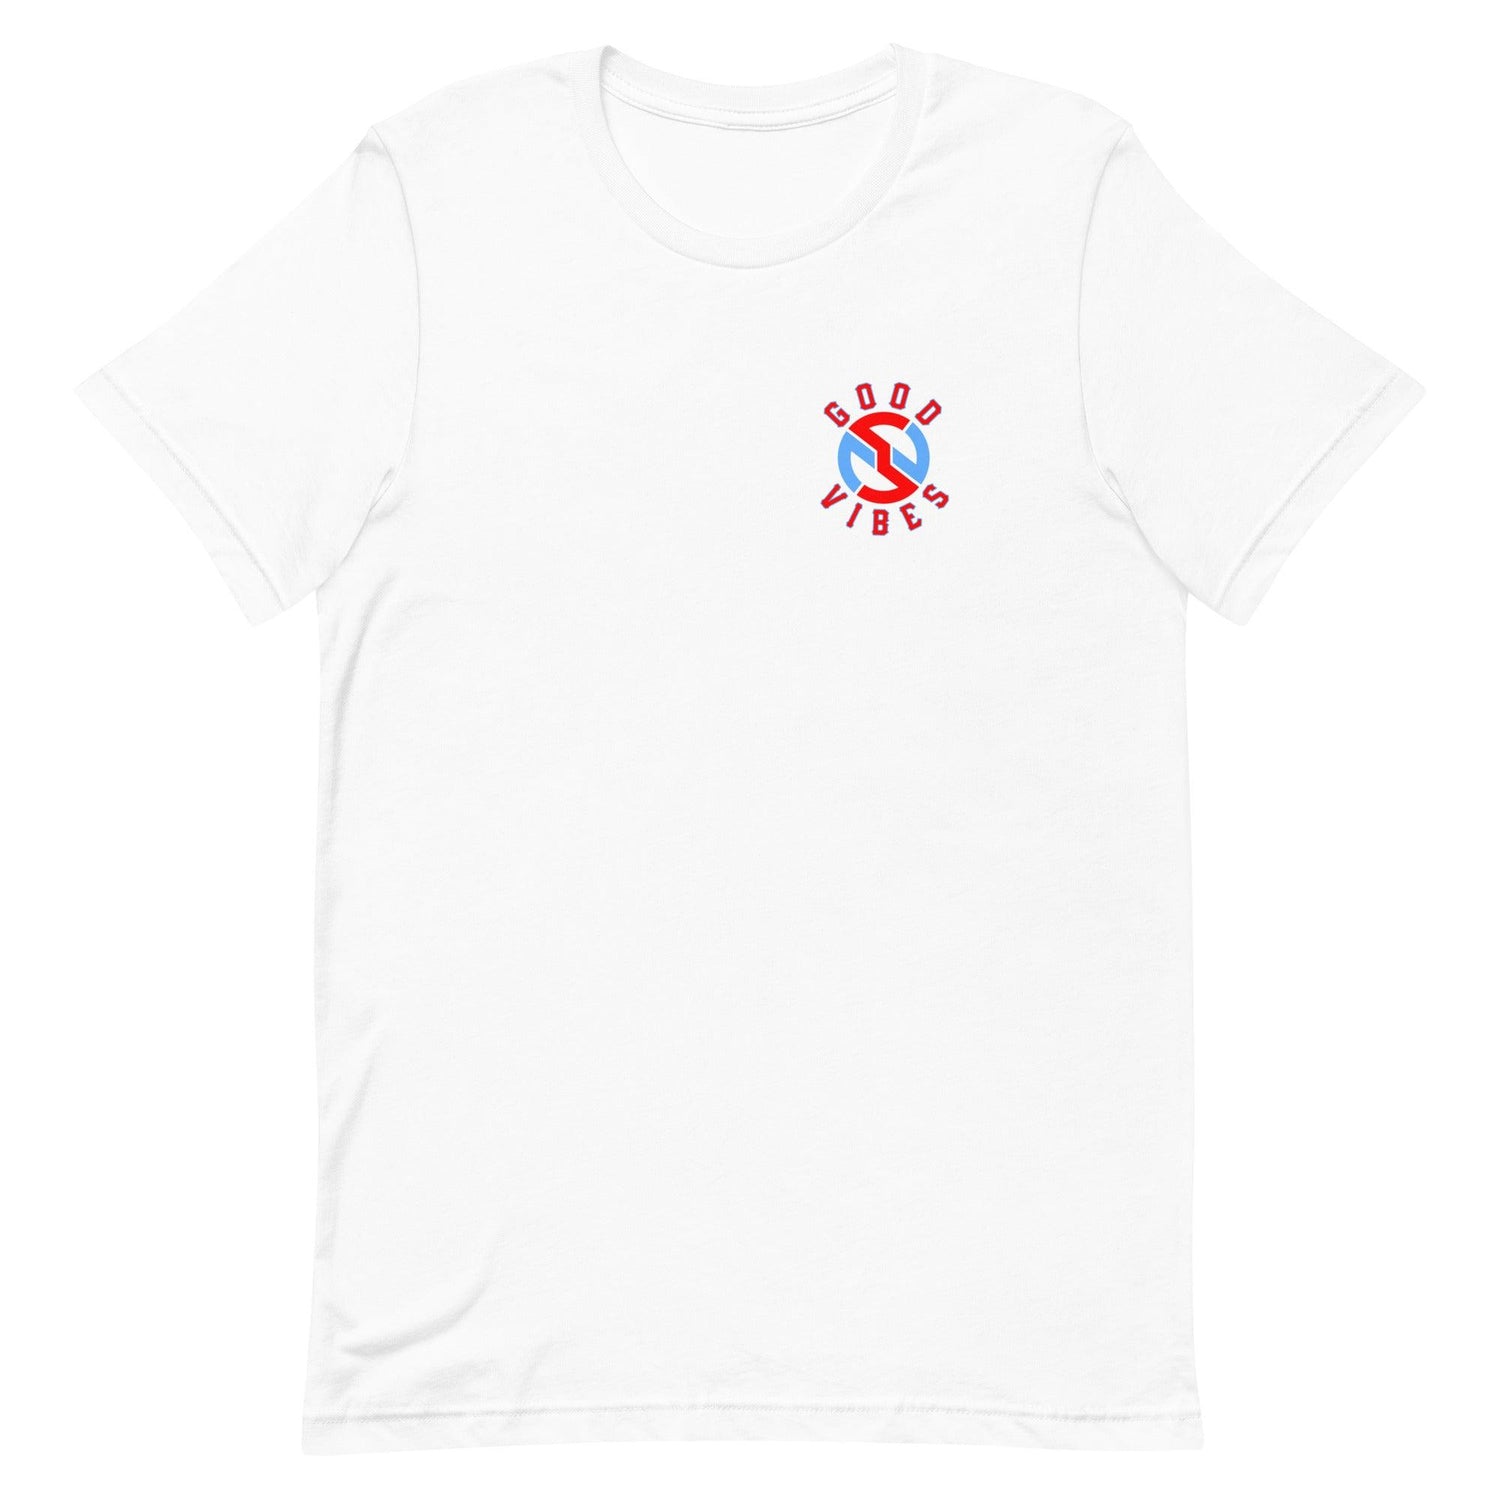 Nick Swiney “Essential” t-shirt - Fan Arch